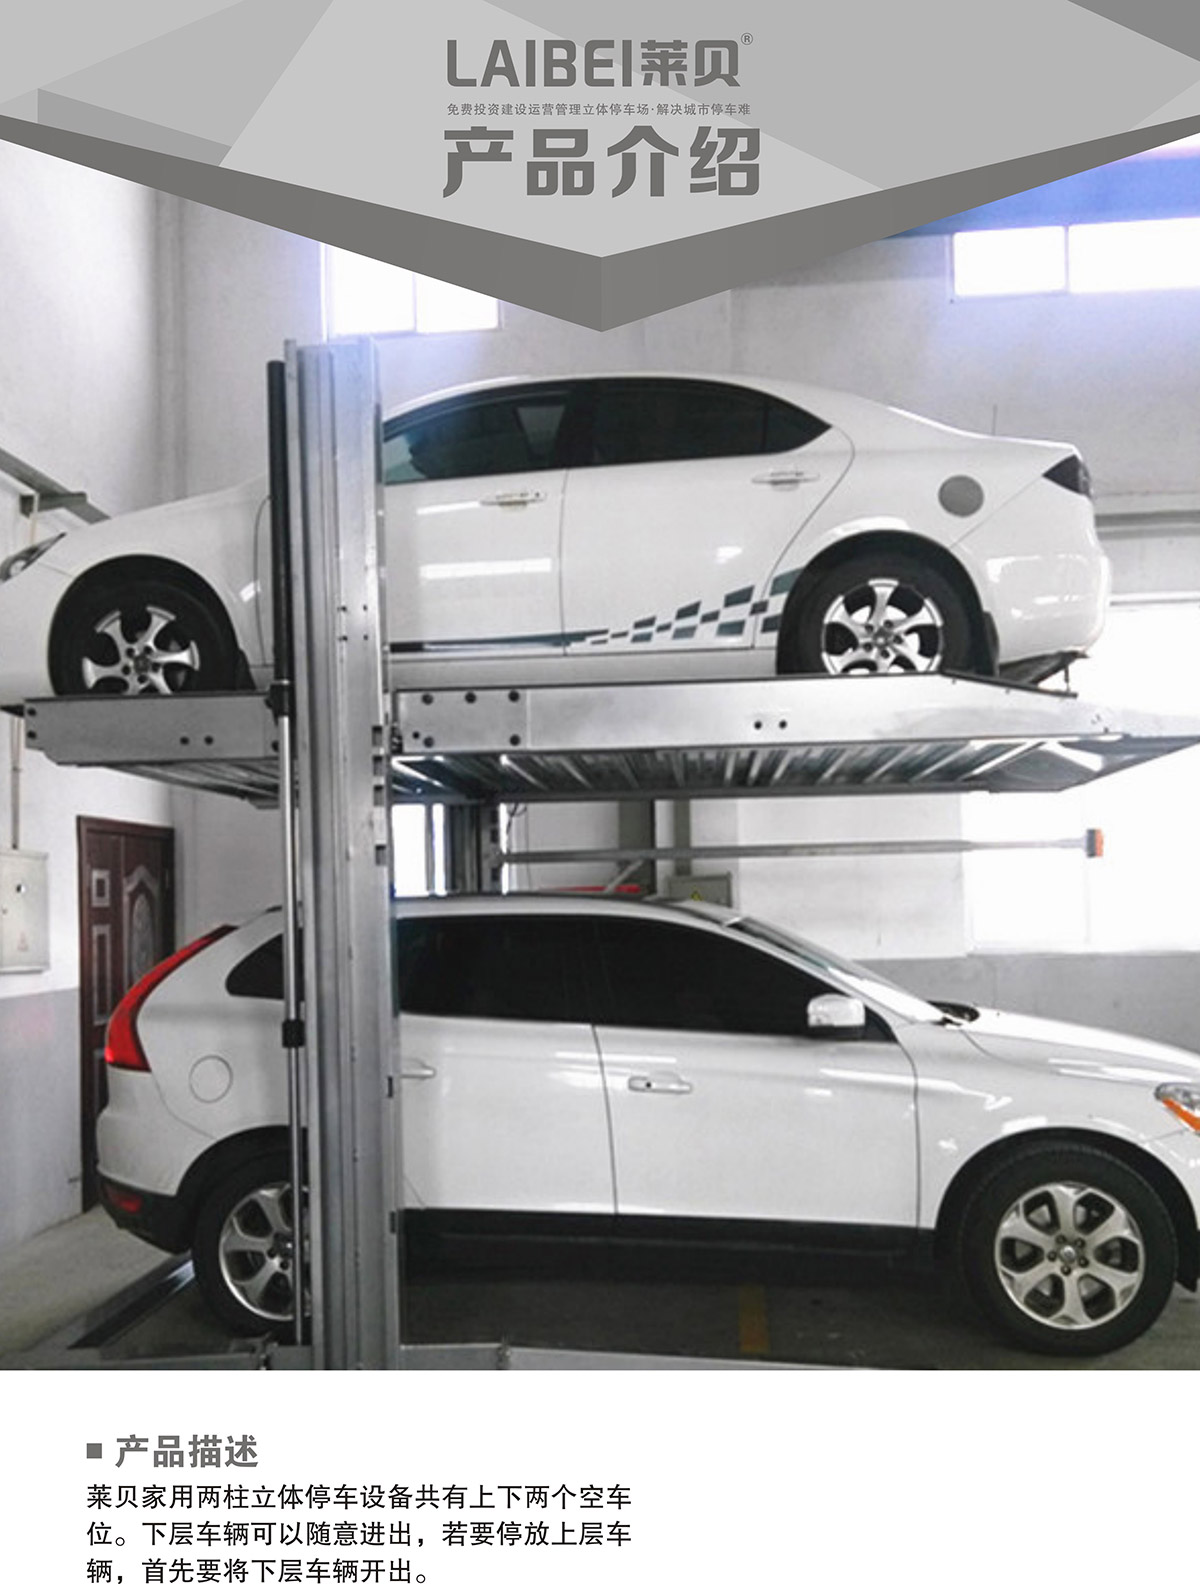 机械停车PJS两柱简易升降立体车库设备产品介绍.jpg